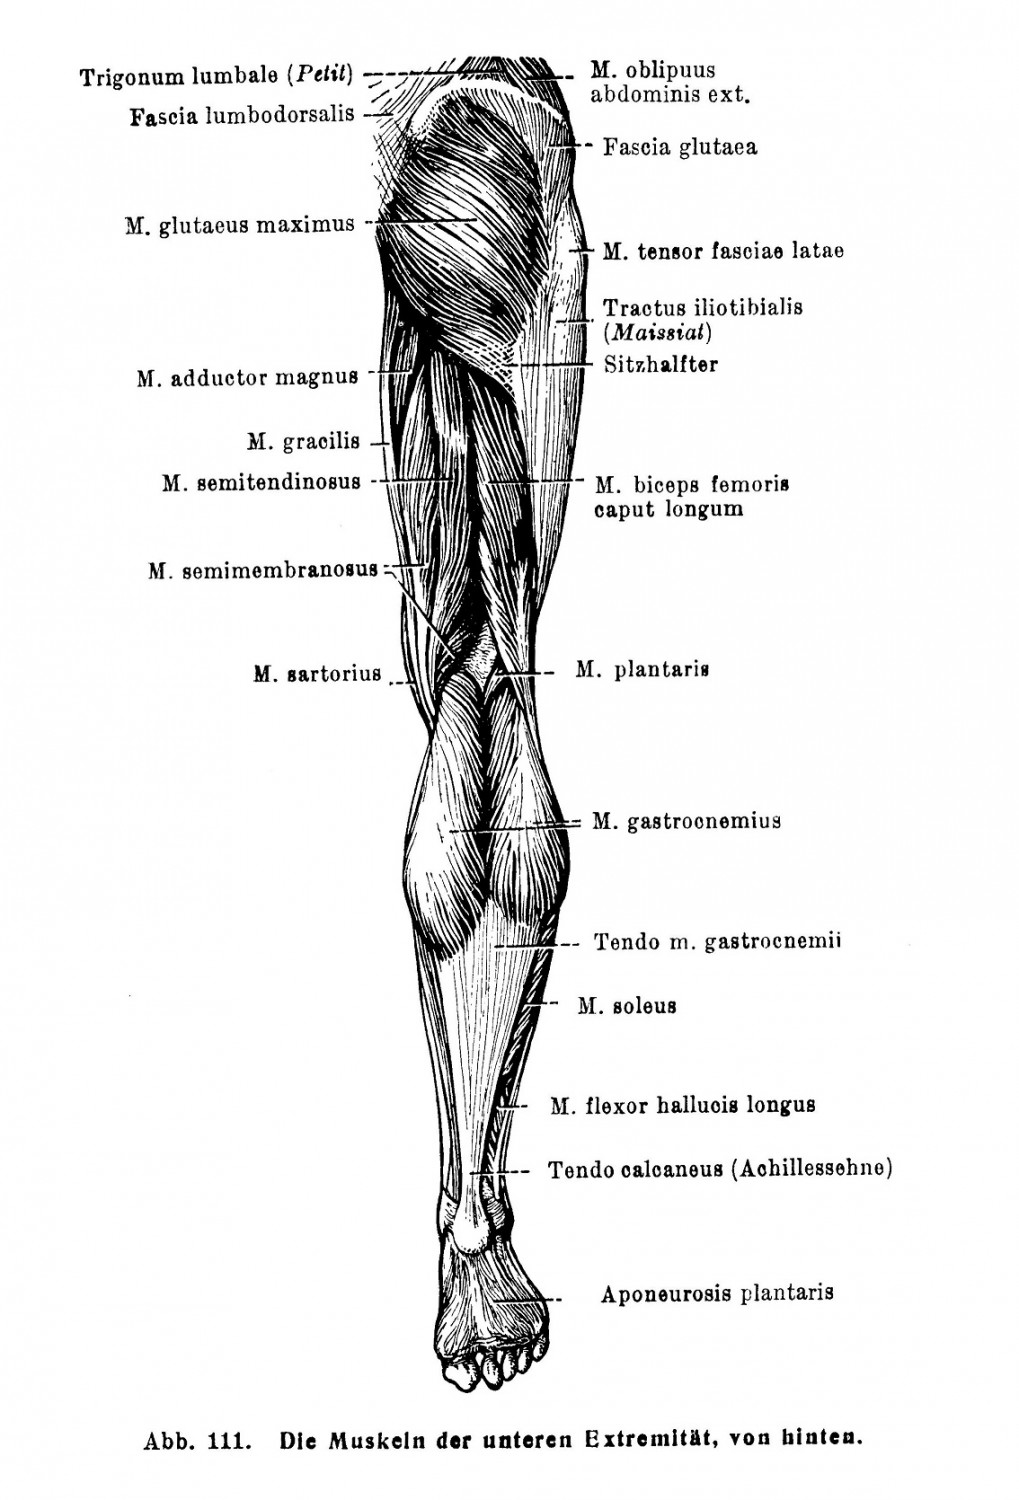 Die Muskeln der unteren Extremität, von hinten